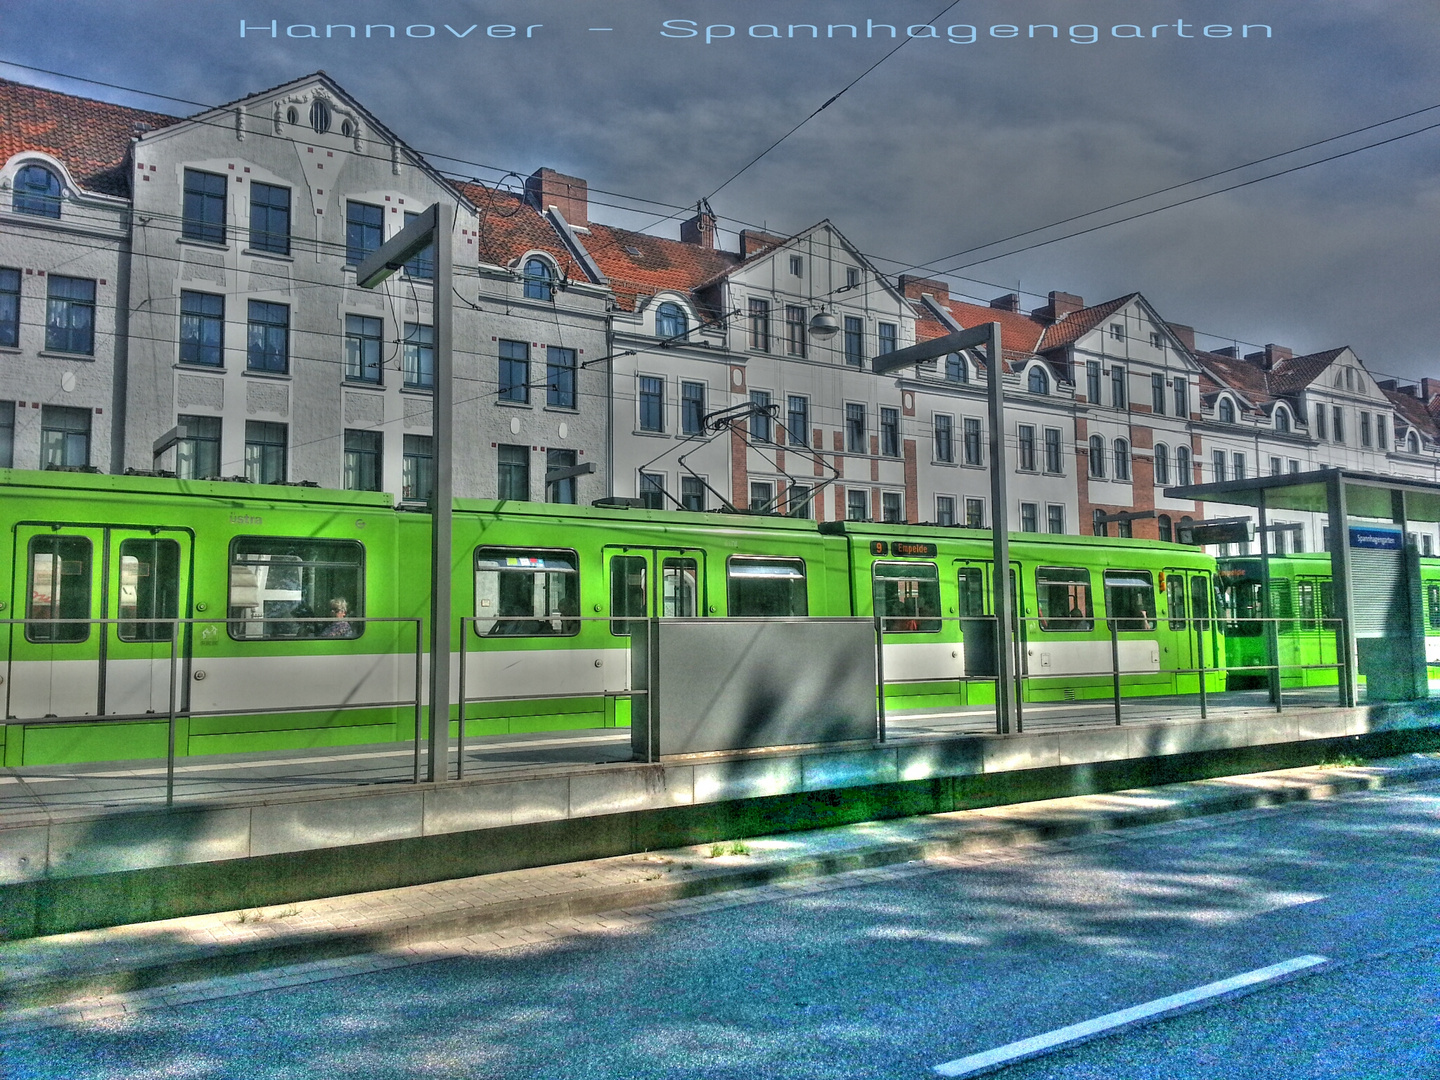 Stadtbahn Hannover - Haltestelle Spannhagengarten